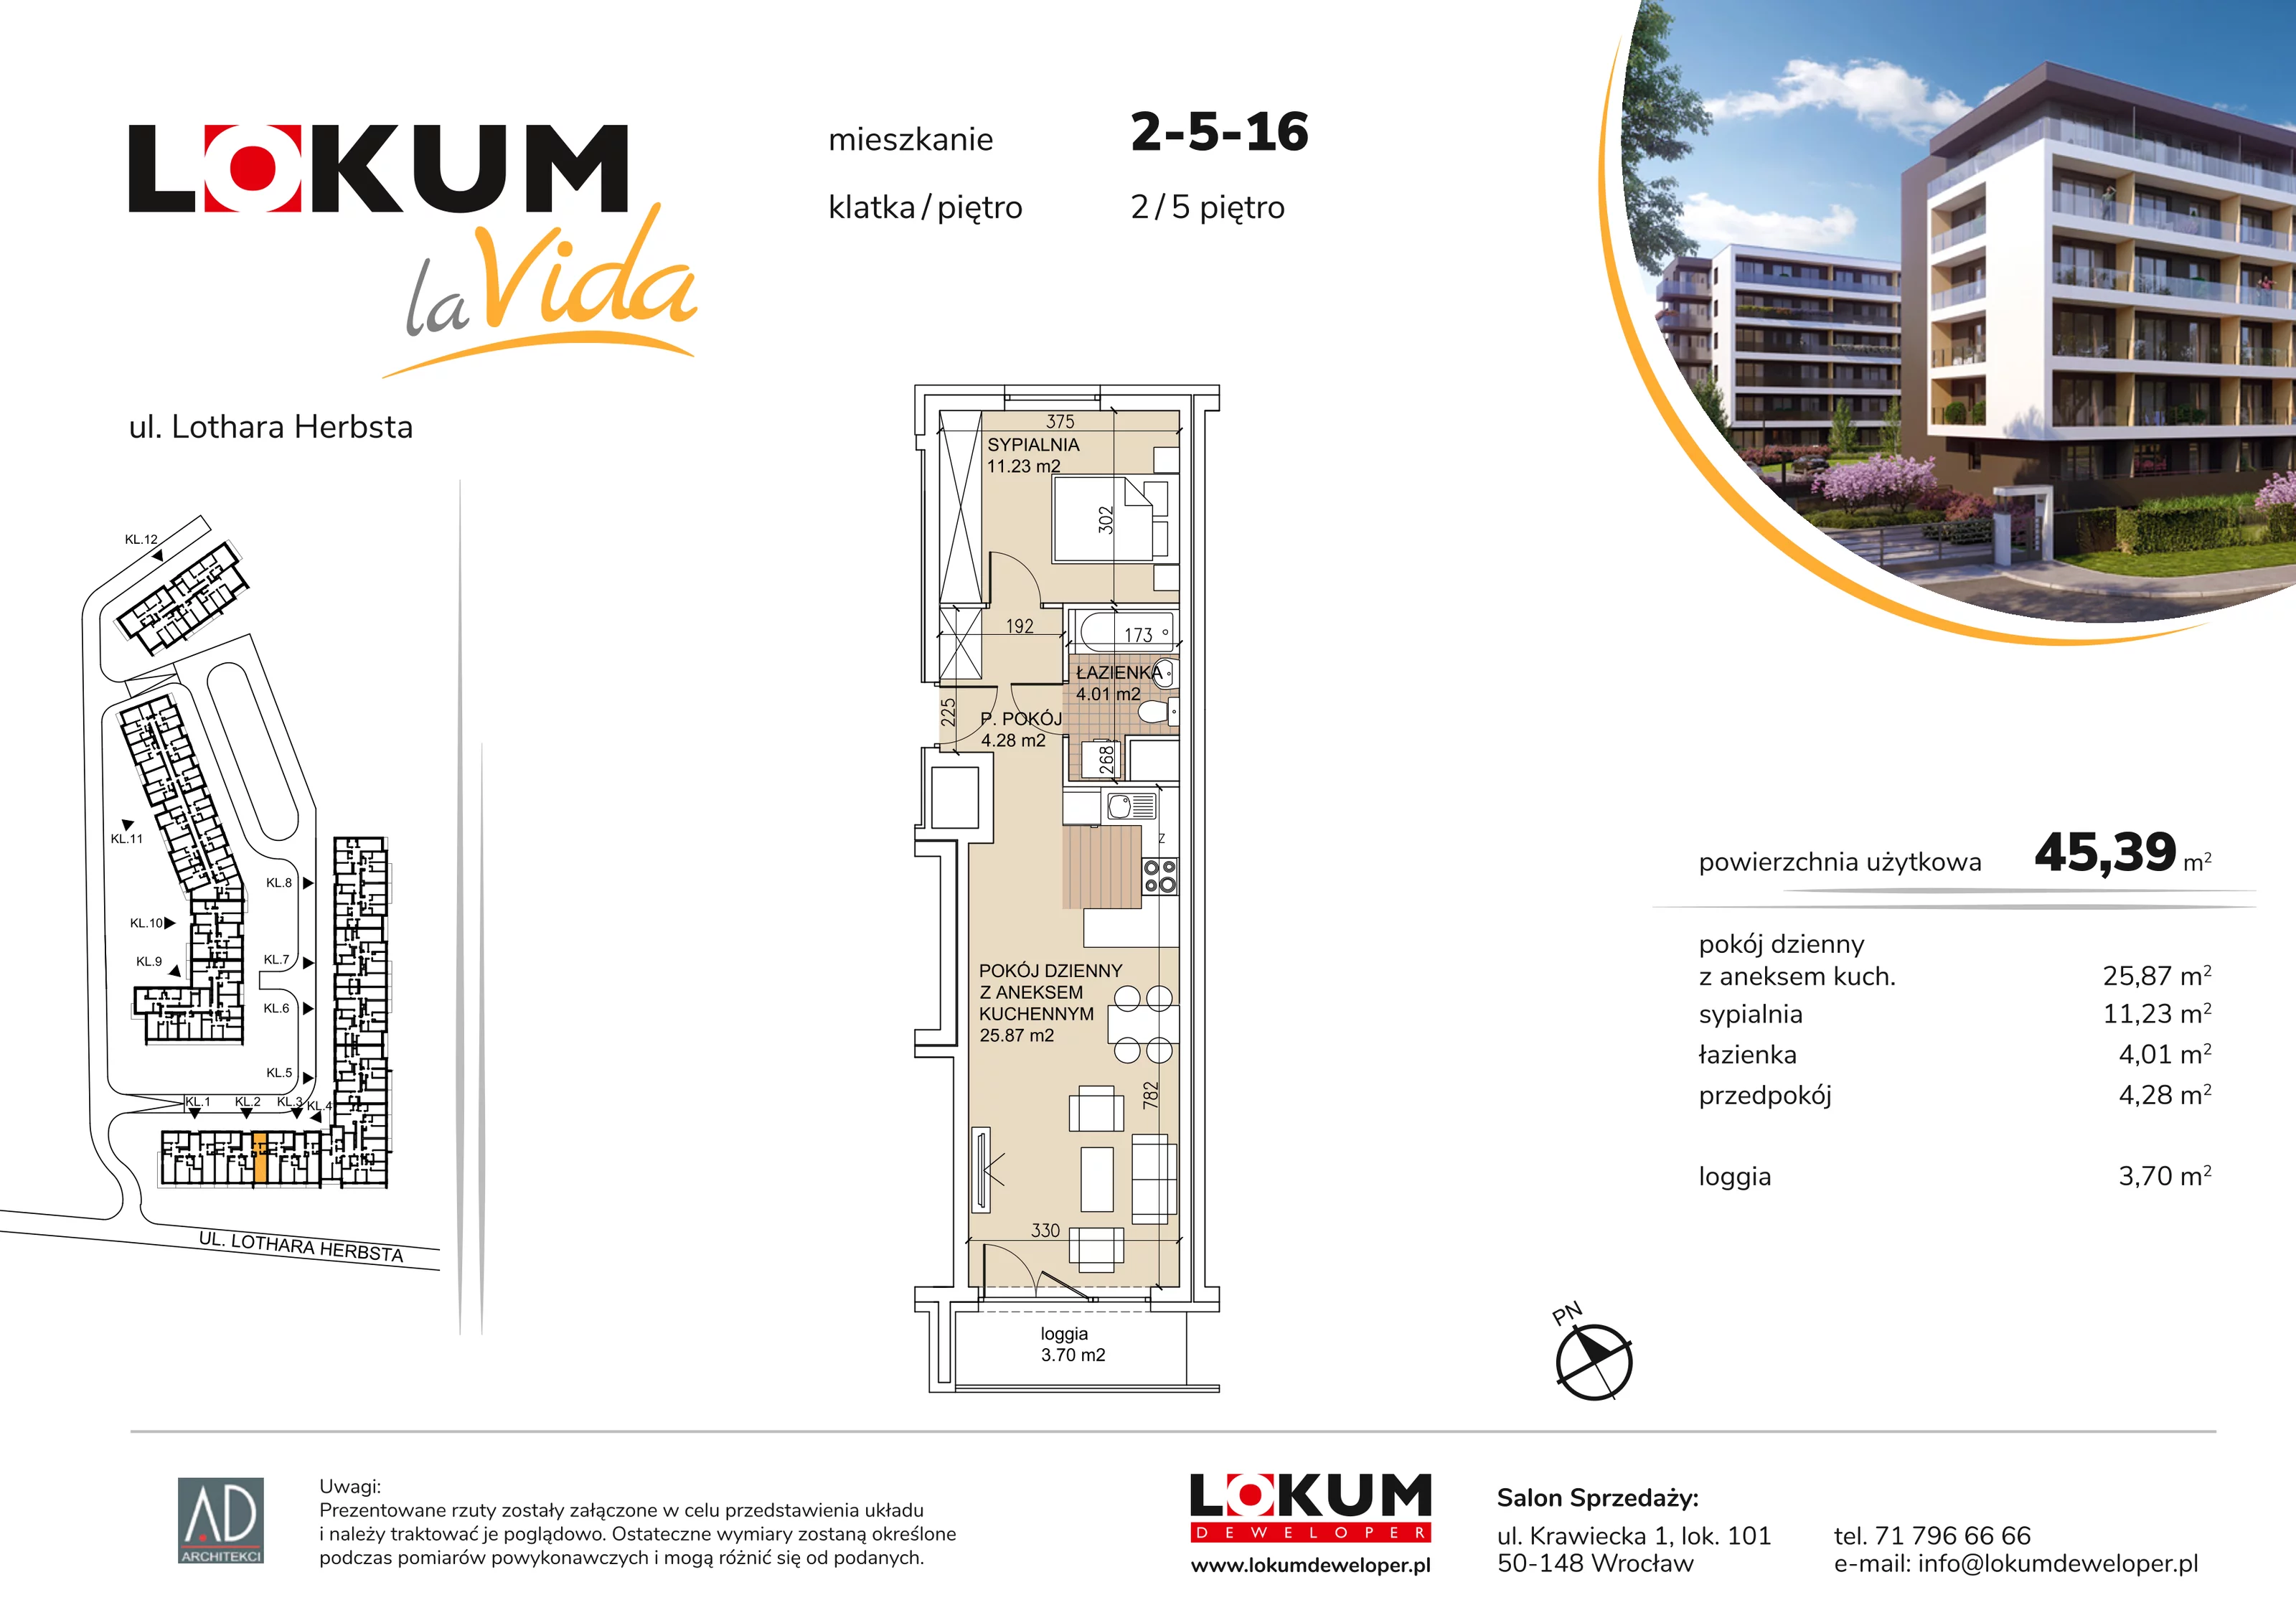 Mieszkanie 45,39 m², piętro 5, oferta nr 2-5-16, Lokum la Vida, Wrocław, Sołtysowice, ul. Lothara Herbsta